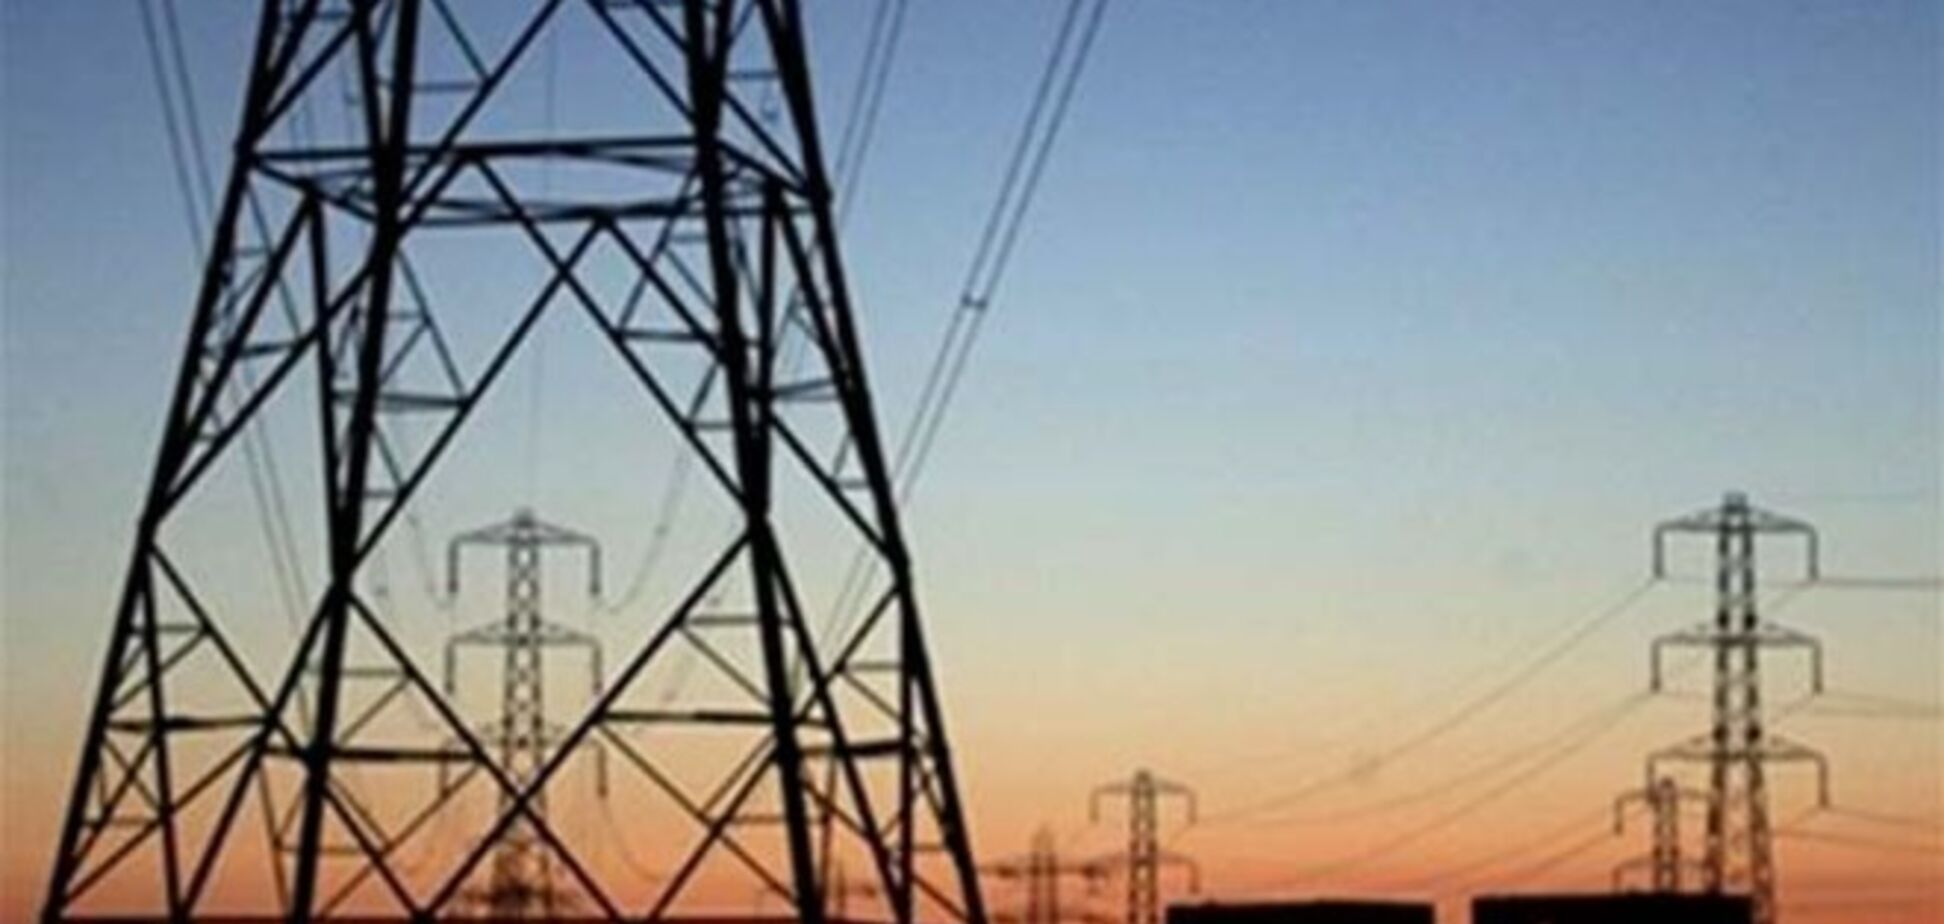 Ощадбанк одолжит 640 миллионов гривен энергокомпаниям Ахметова